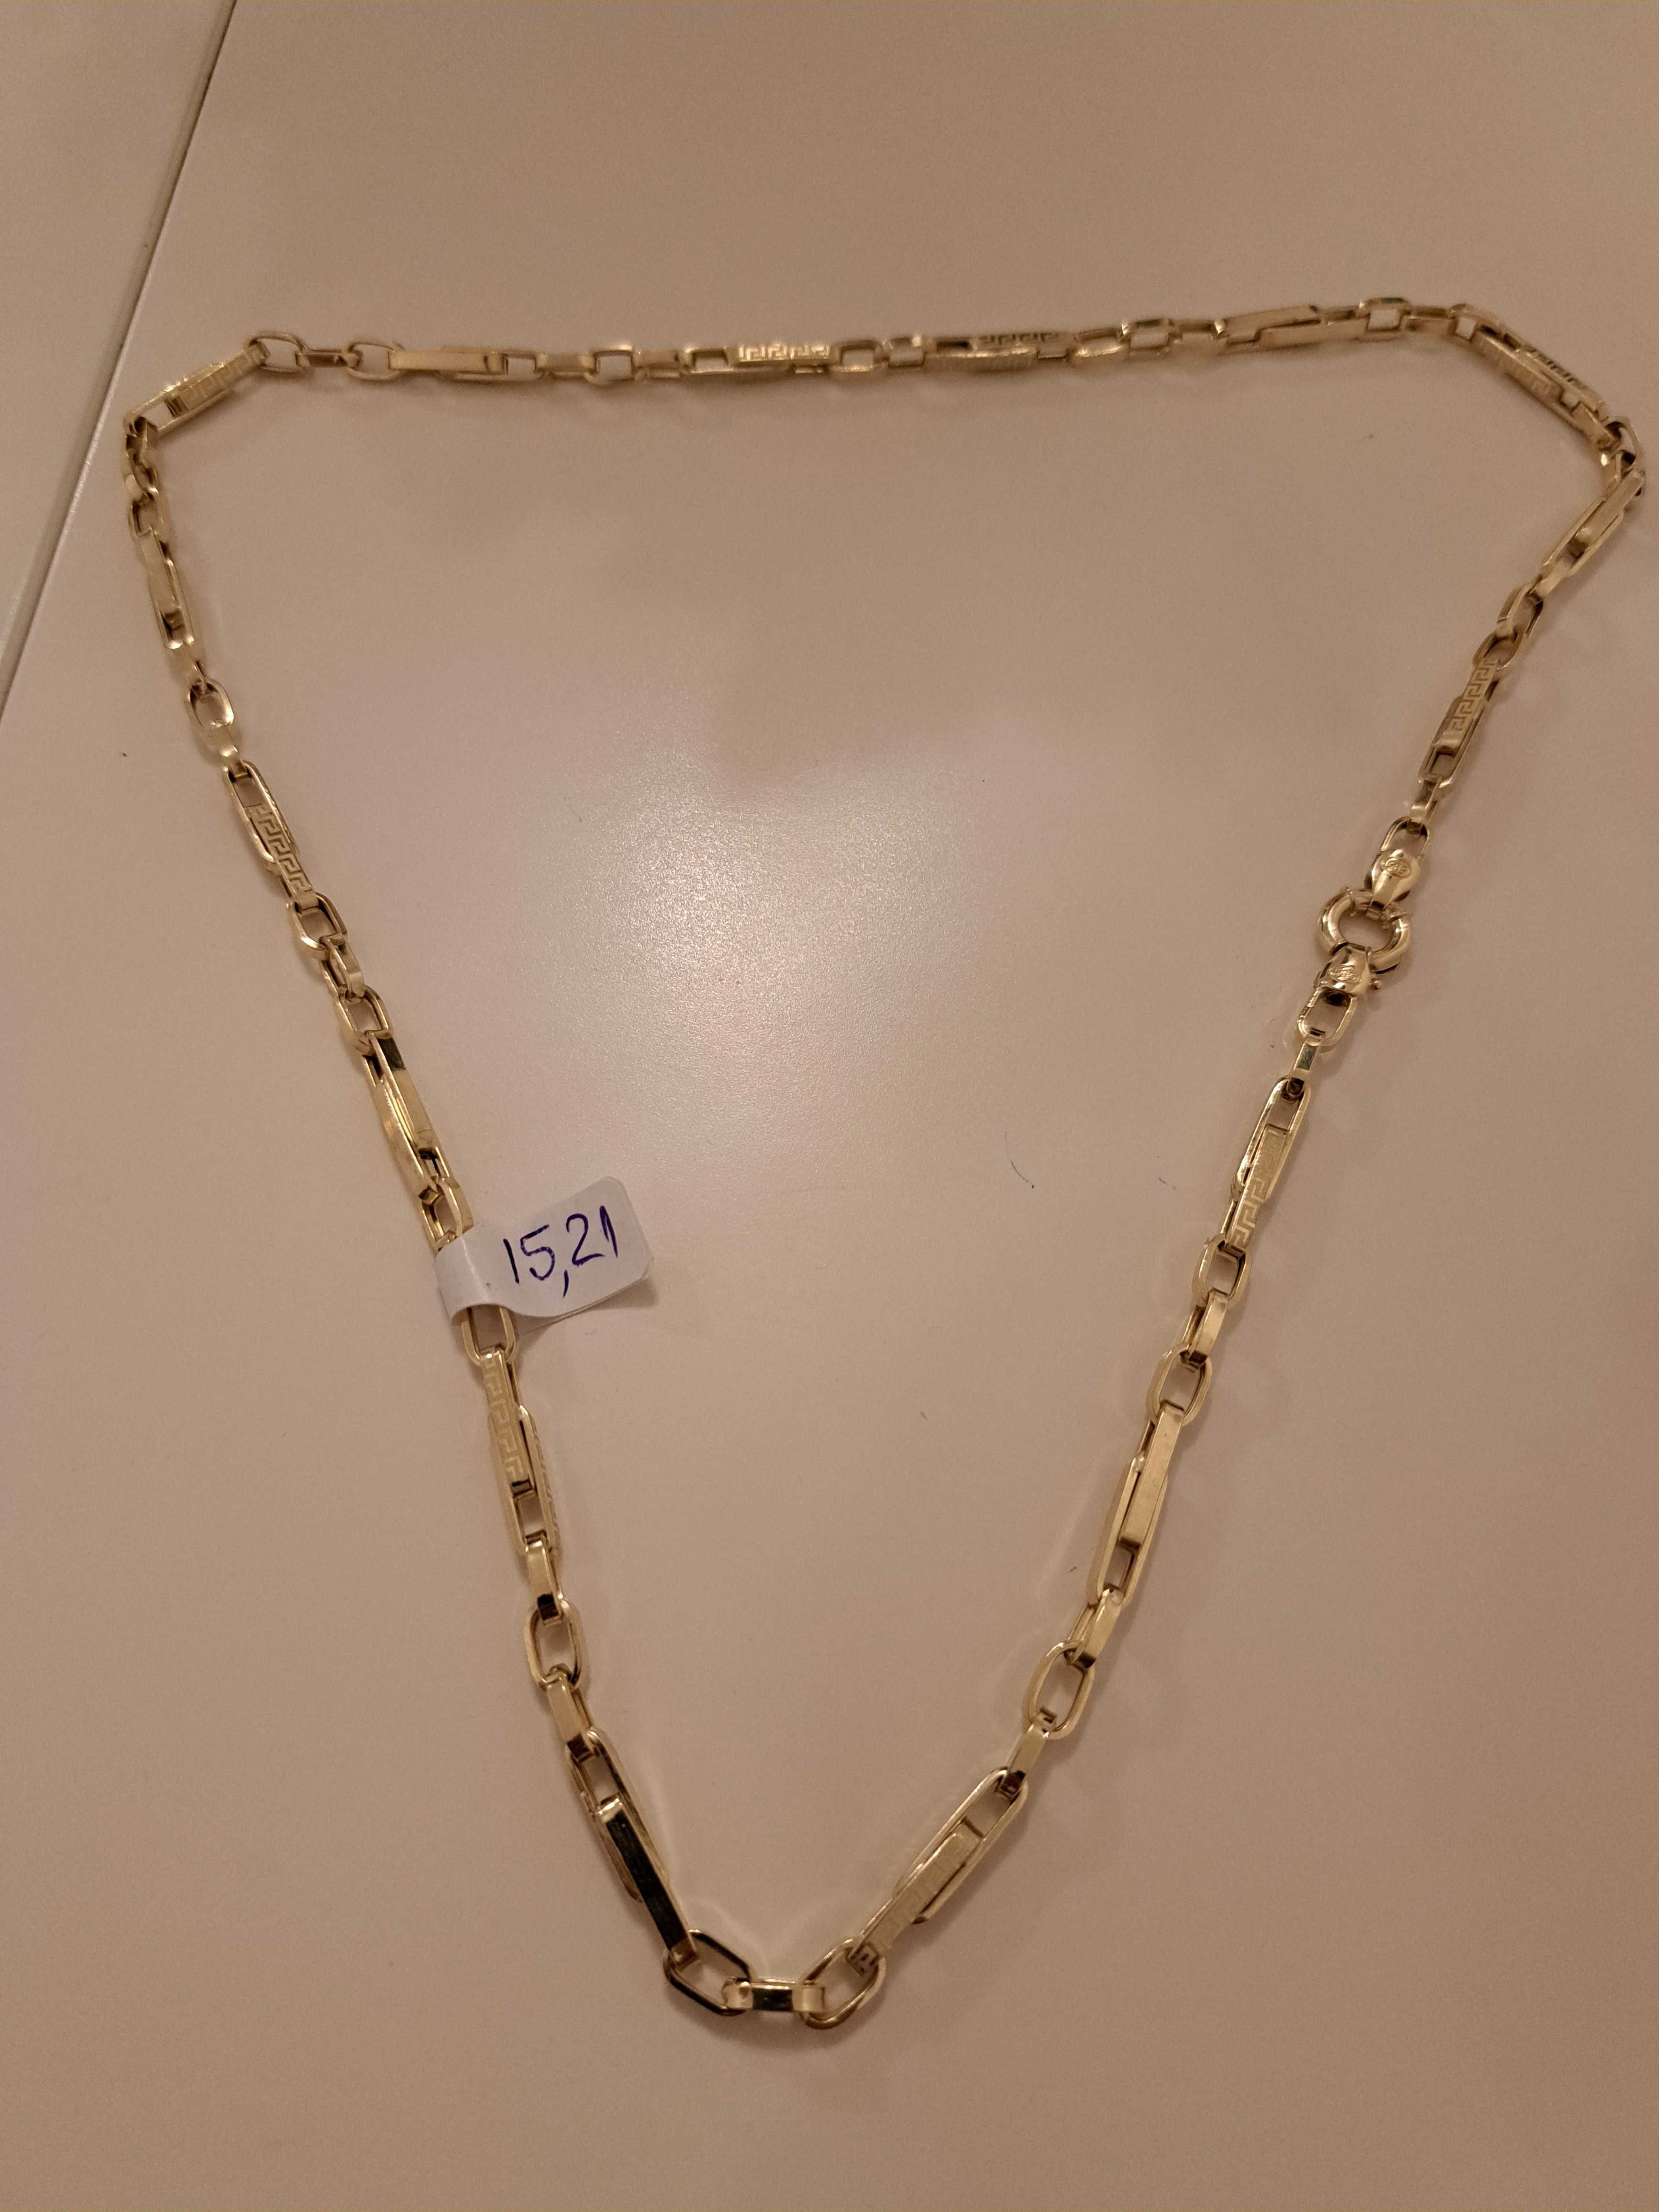 Lant aur Versace,  14k, 60 cm , 15,21 grame